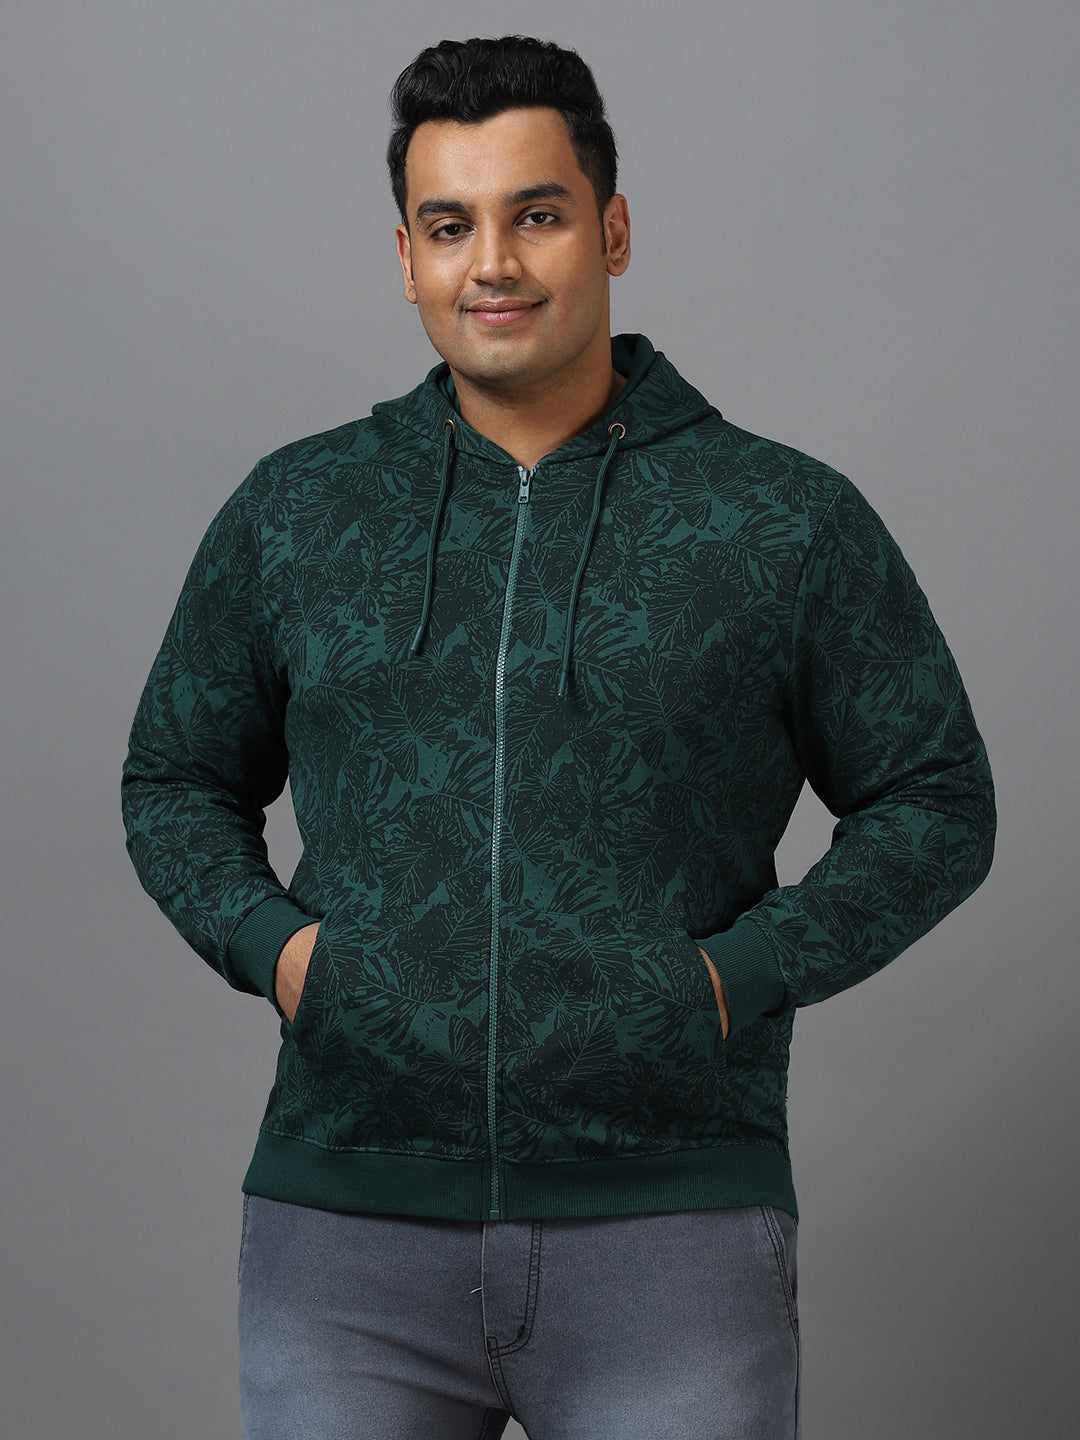 Plus Men's Dark Green Regular Fit Printed Full Sleeve Casual Winterwear Hooded Sweatshirt